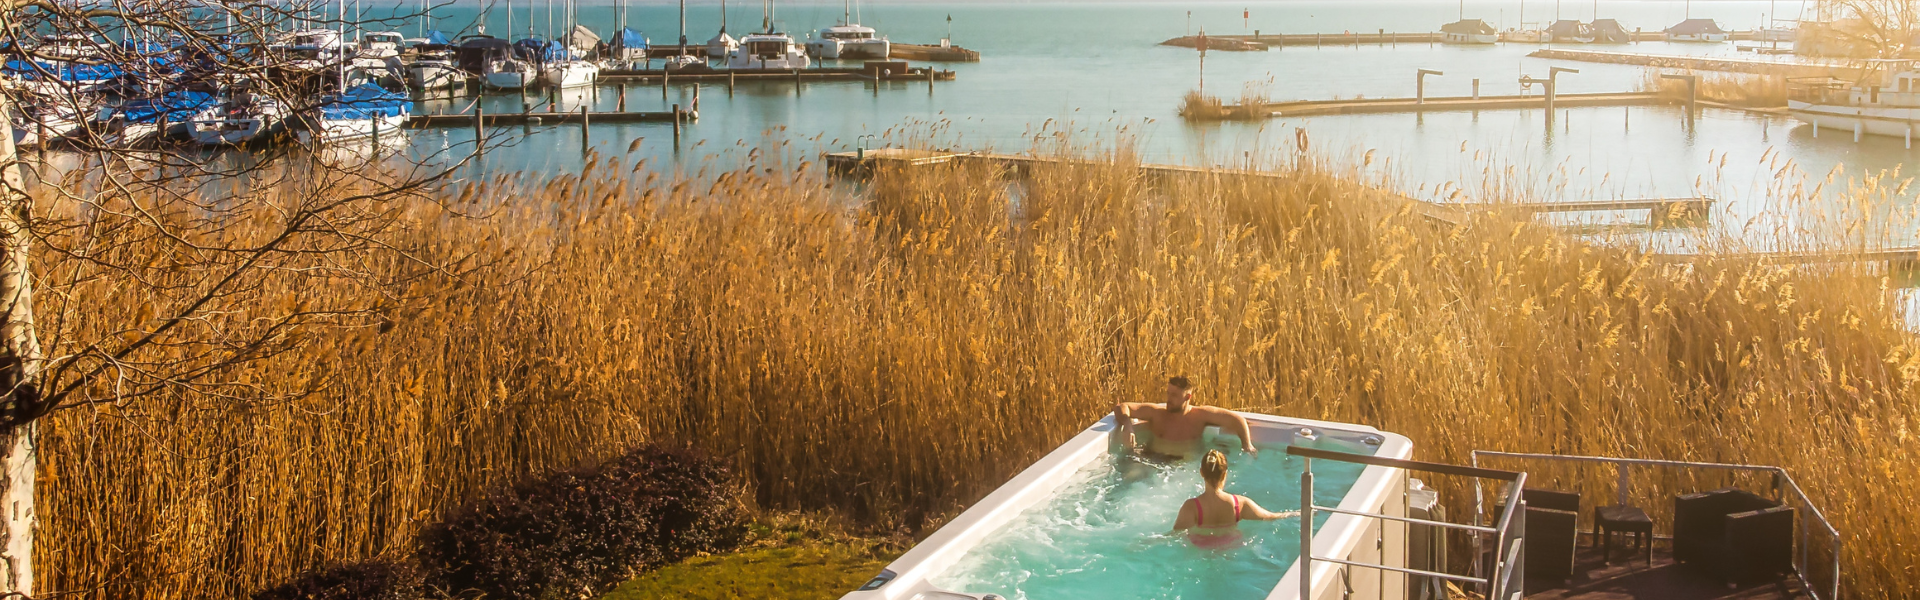 Mert szépen csillog az ezüst, de még szebben ragyog az arany :: Hotel Golden Lake Resort